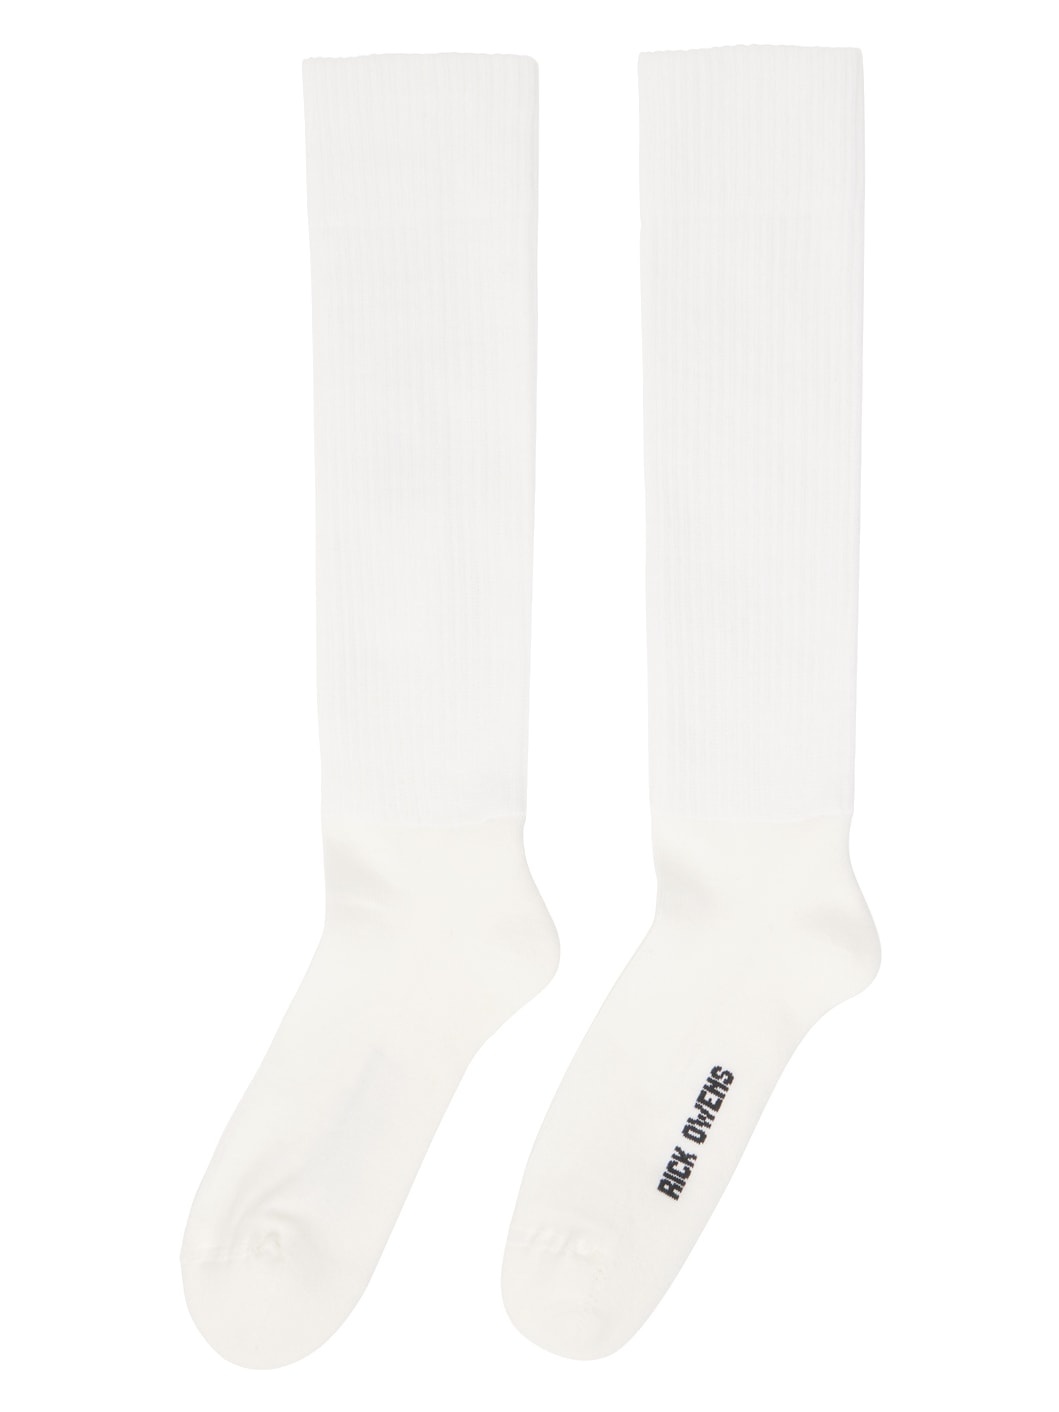 Off-White Knee High Socks - 2